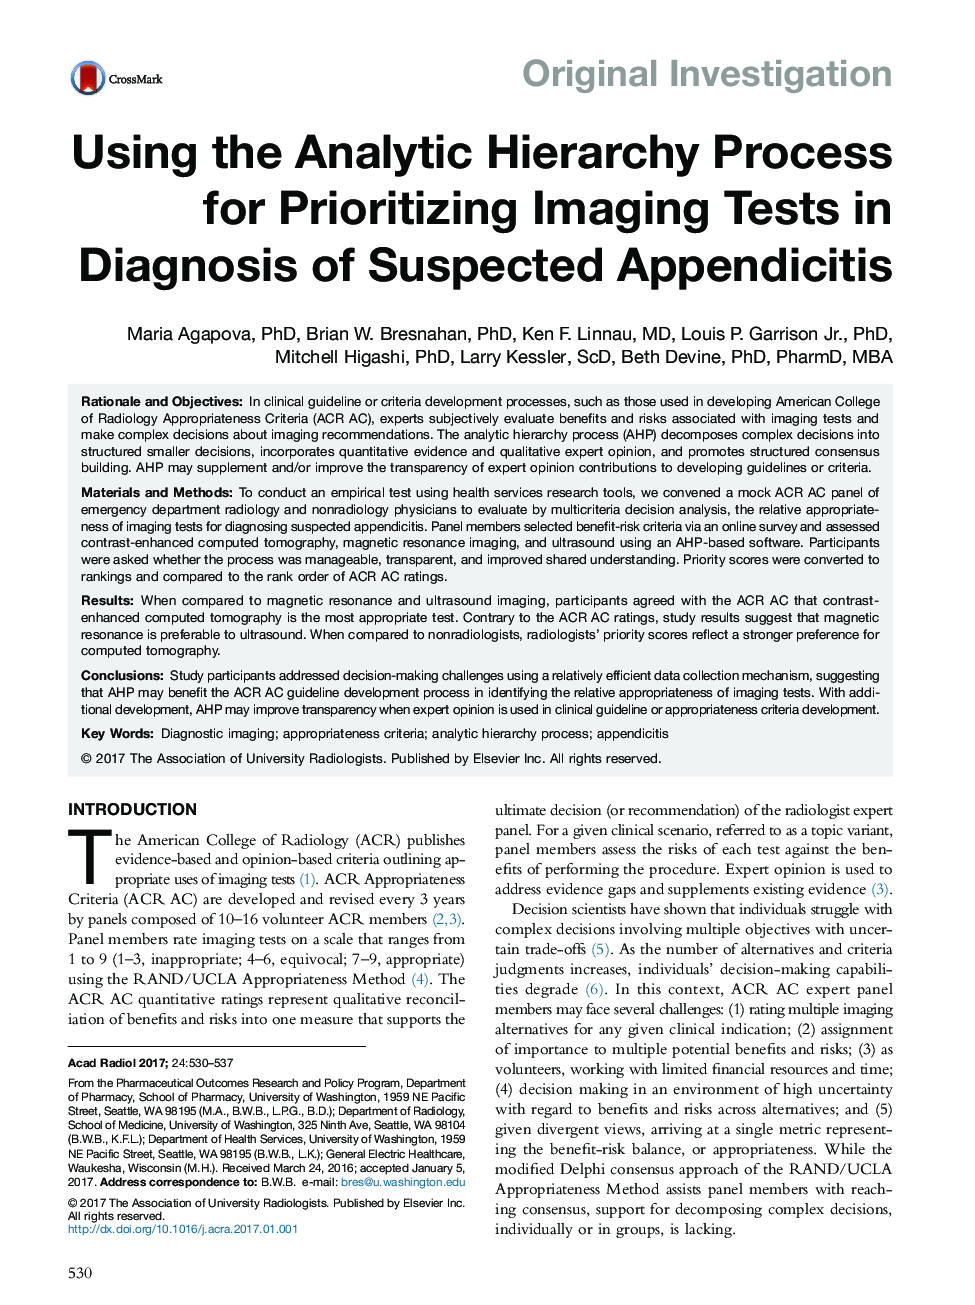 بررسی اصلی استفاده از فرآیند سلسله مراتبی تحلیلی برای اولویت بندی تست های تصویربرداری در تشخیص آپاندیسیت مظنون 